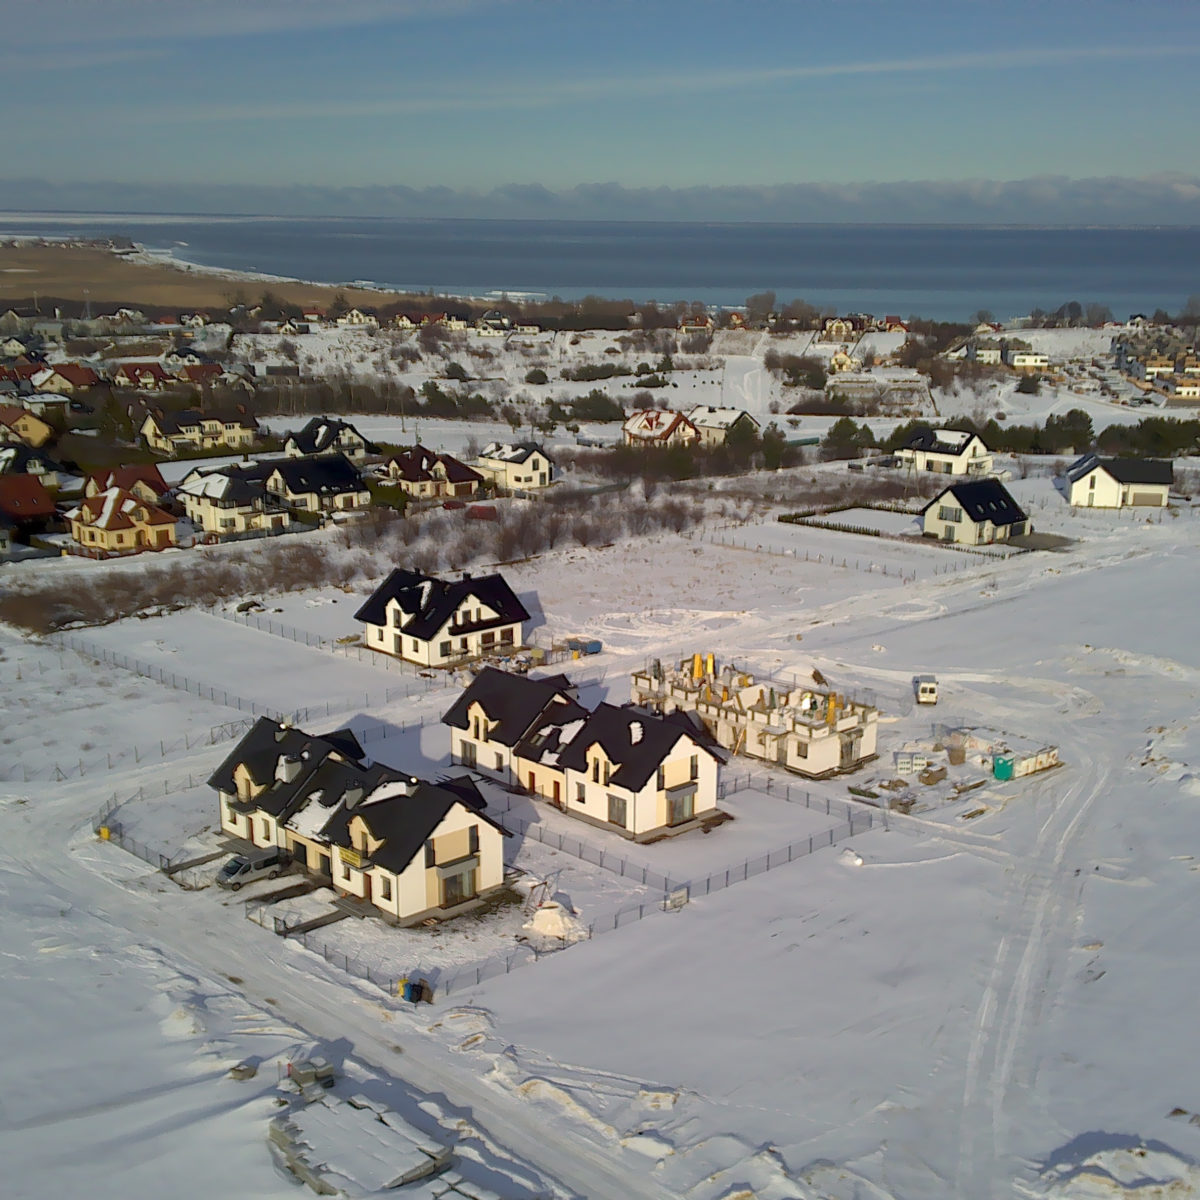 Widok na domy bliźniacze zima 2020/2021